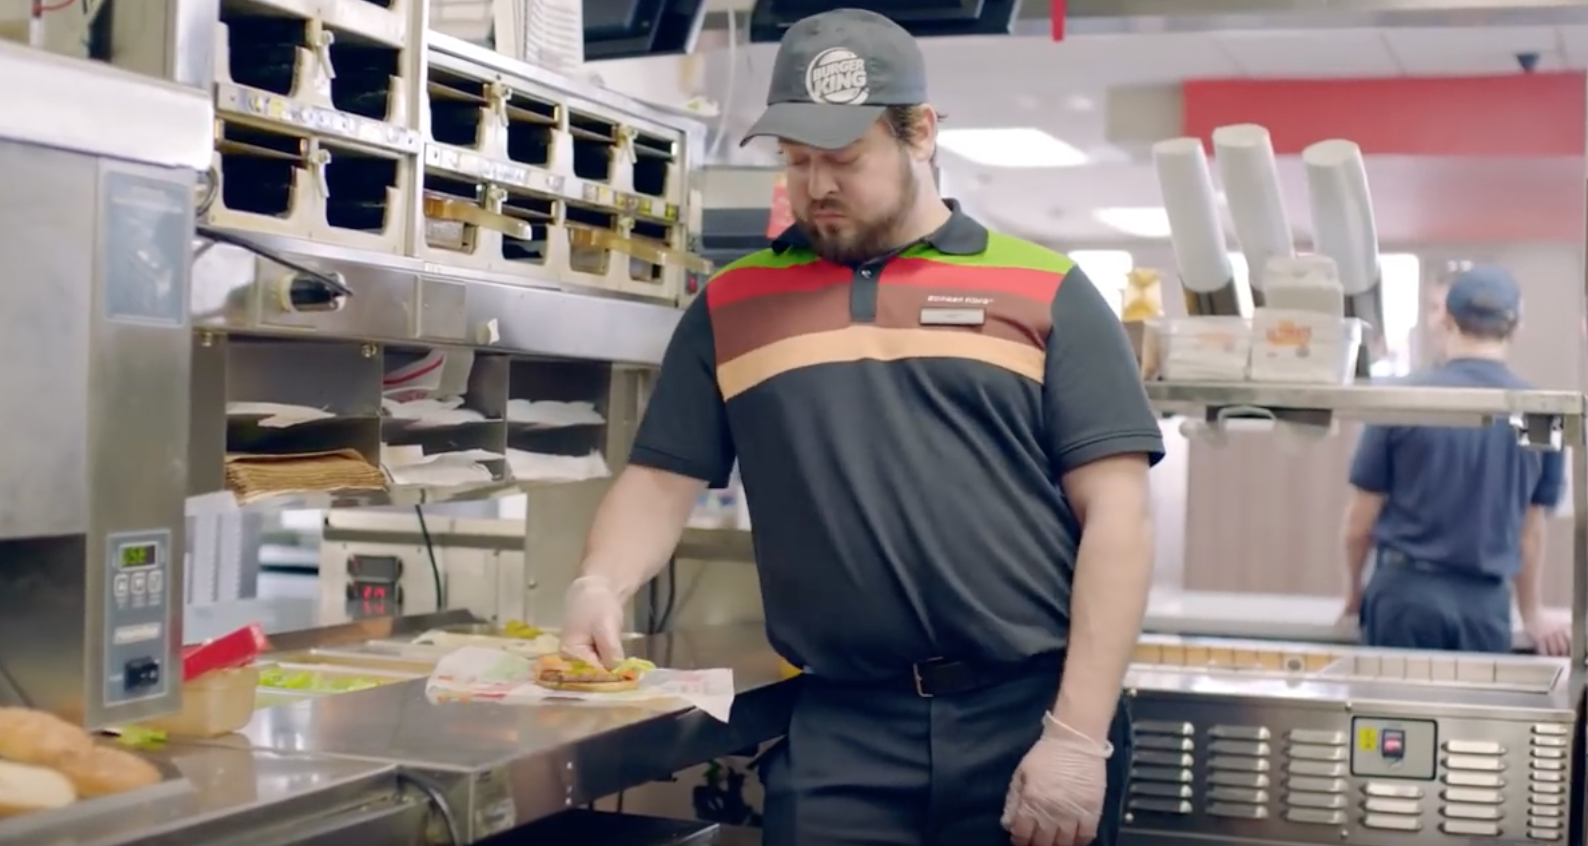 Nuevo anuncio de Burger King muestra la dolorosa realidad del acoso escolar 